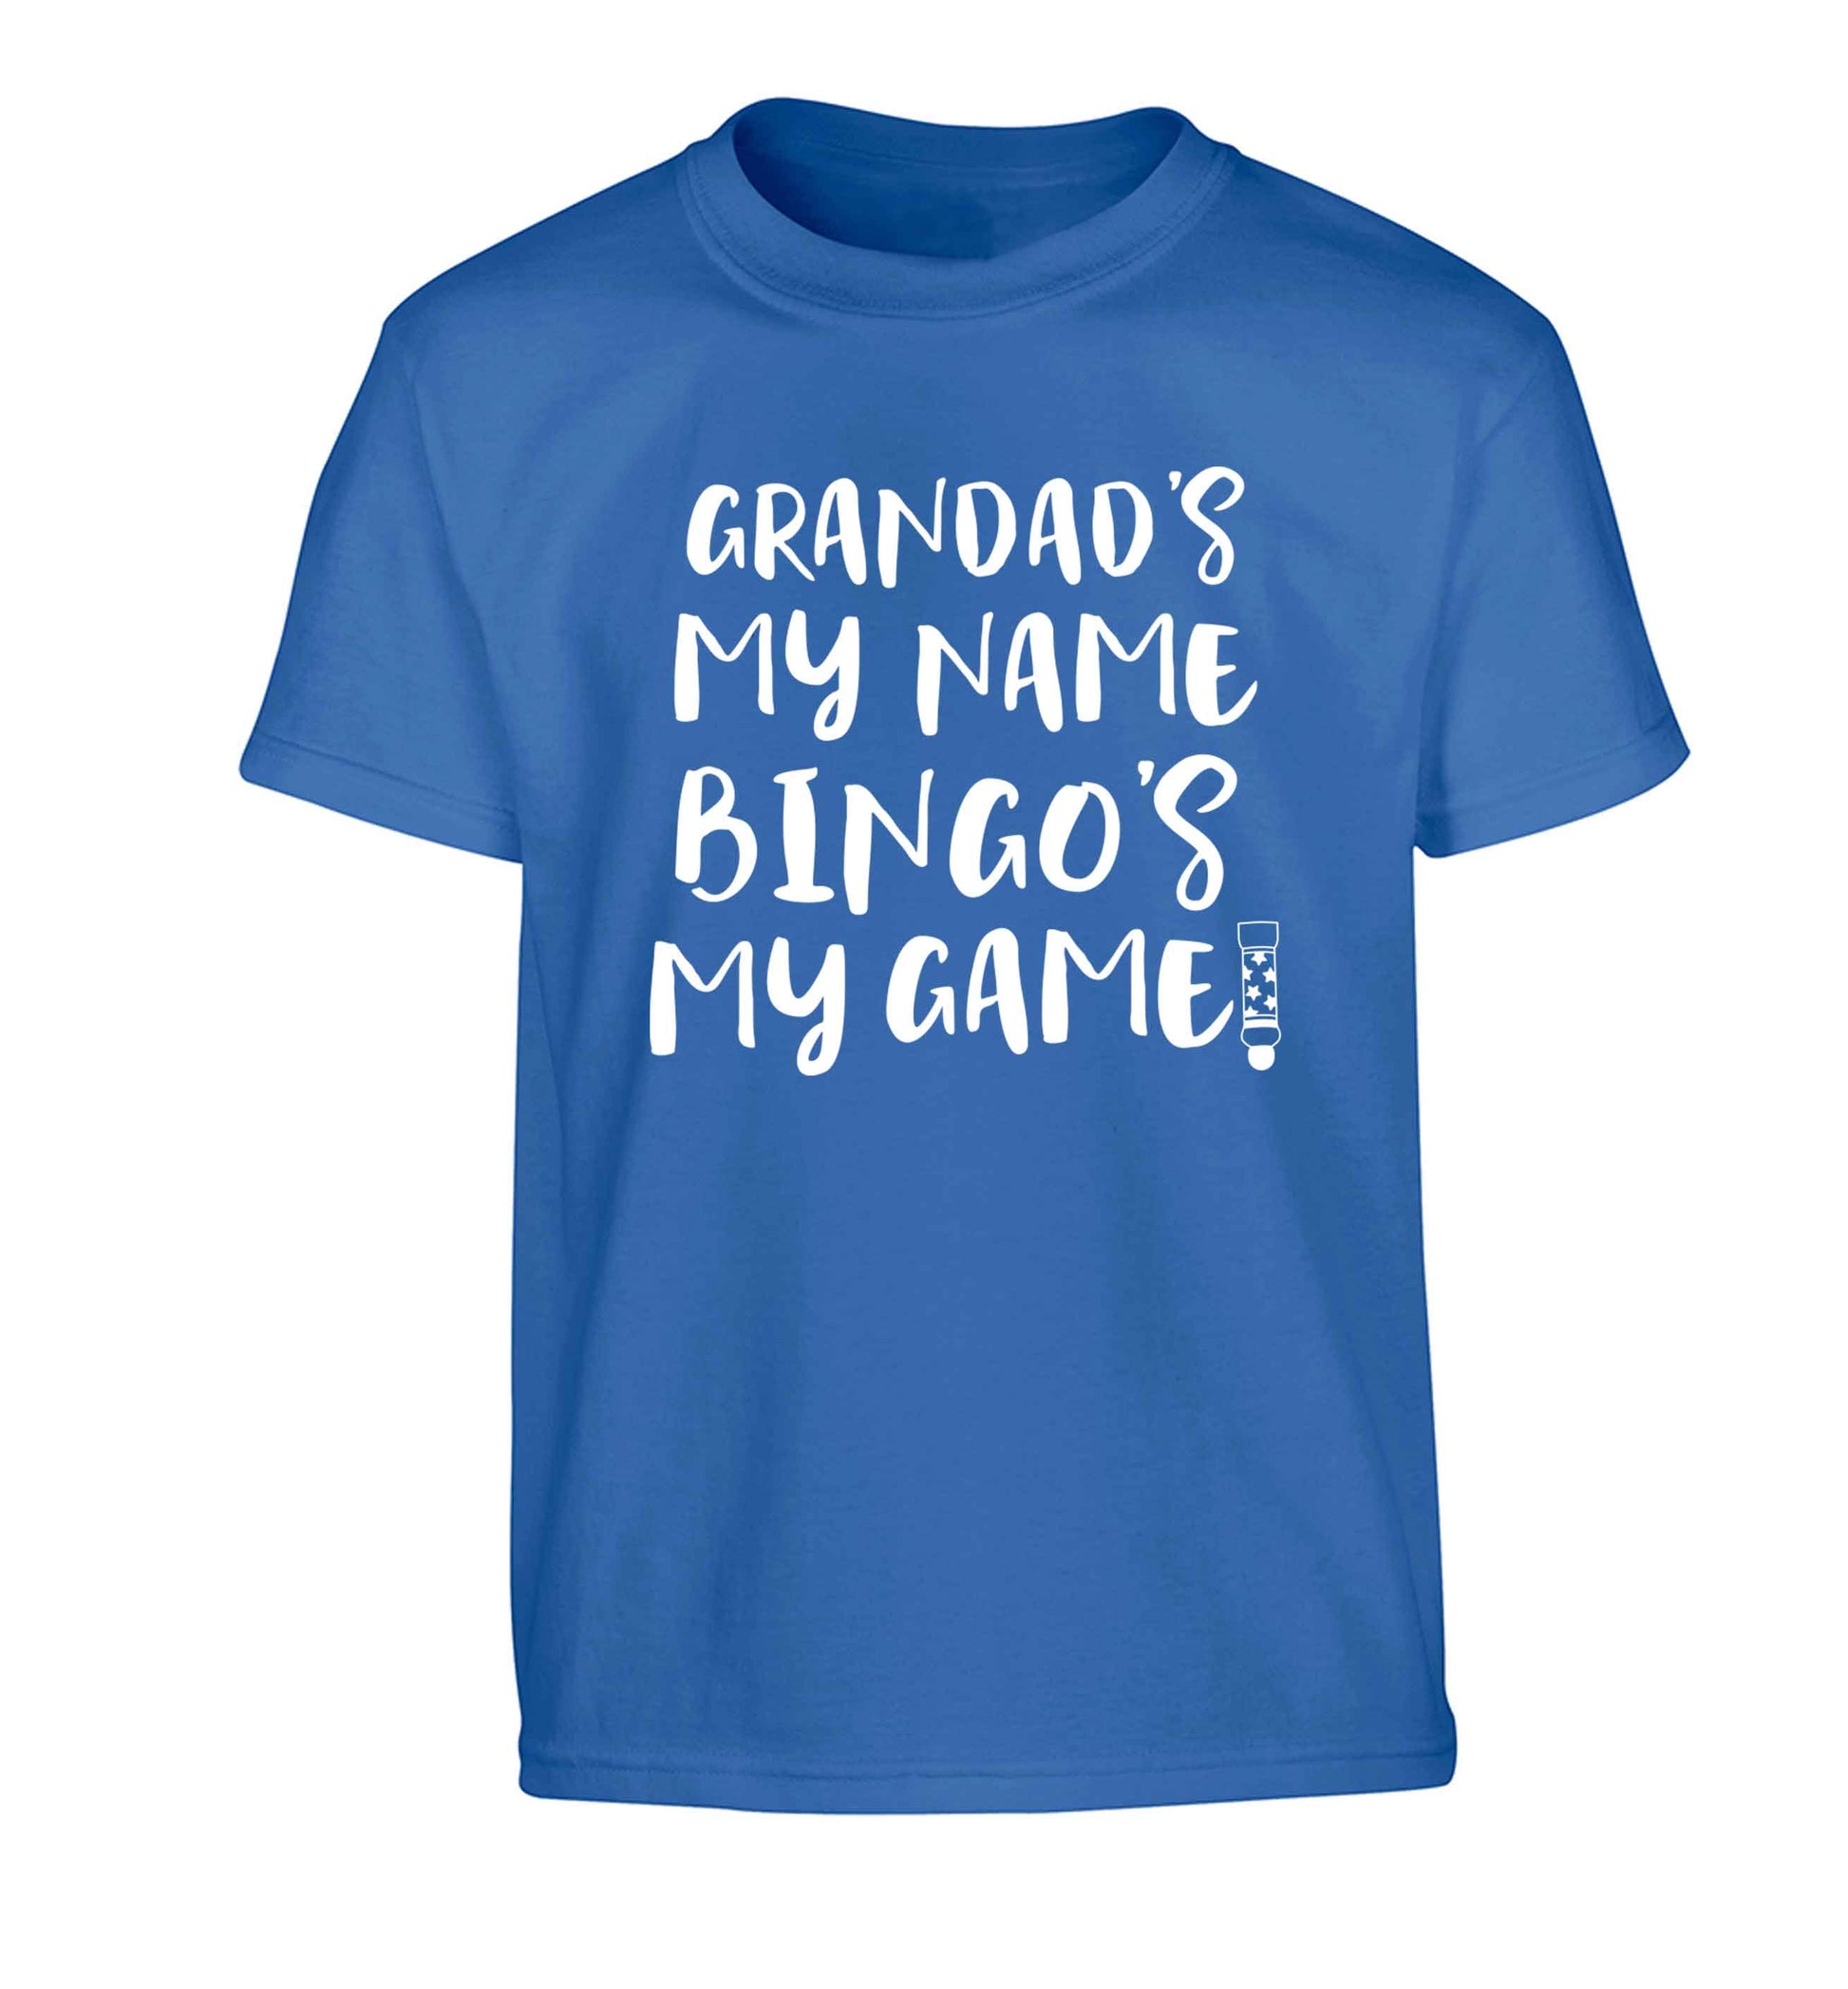 Grandad's my name bingo's my game! Children's blue Tshirt 12-13 Years